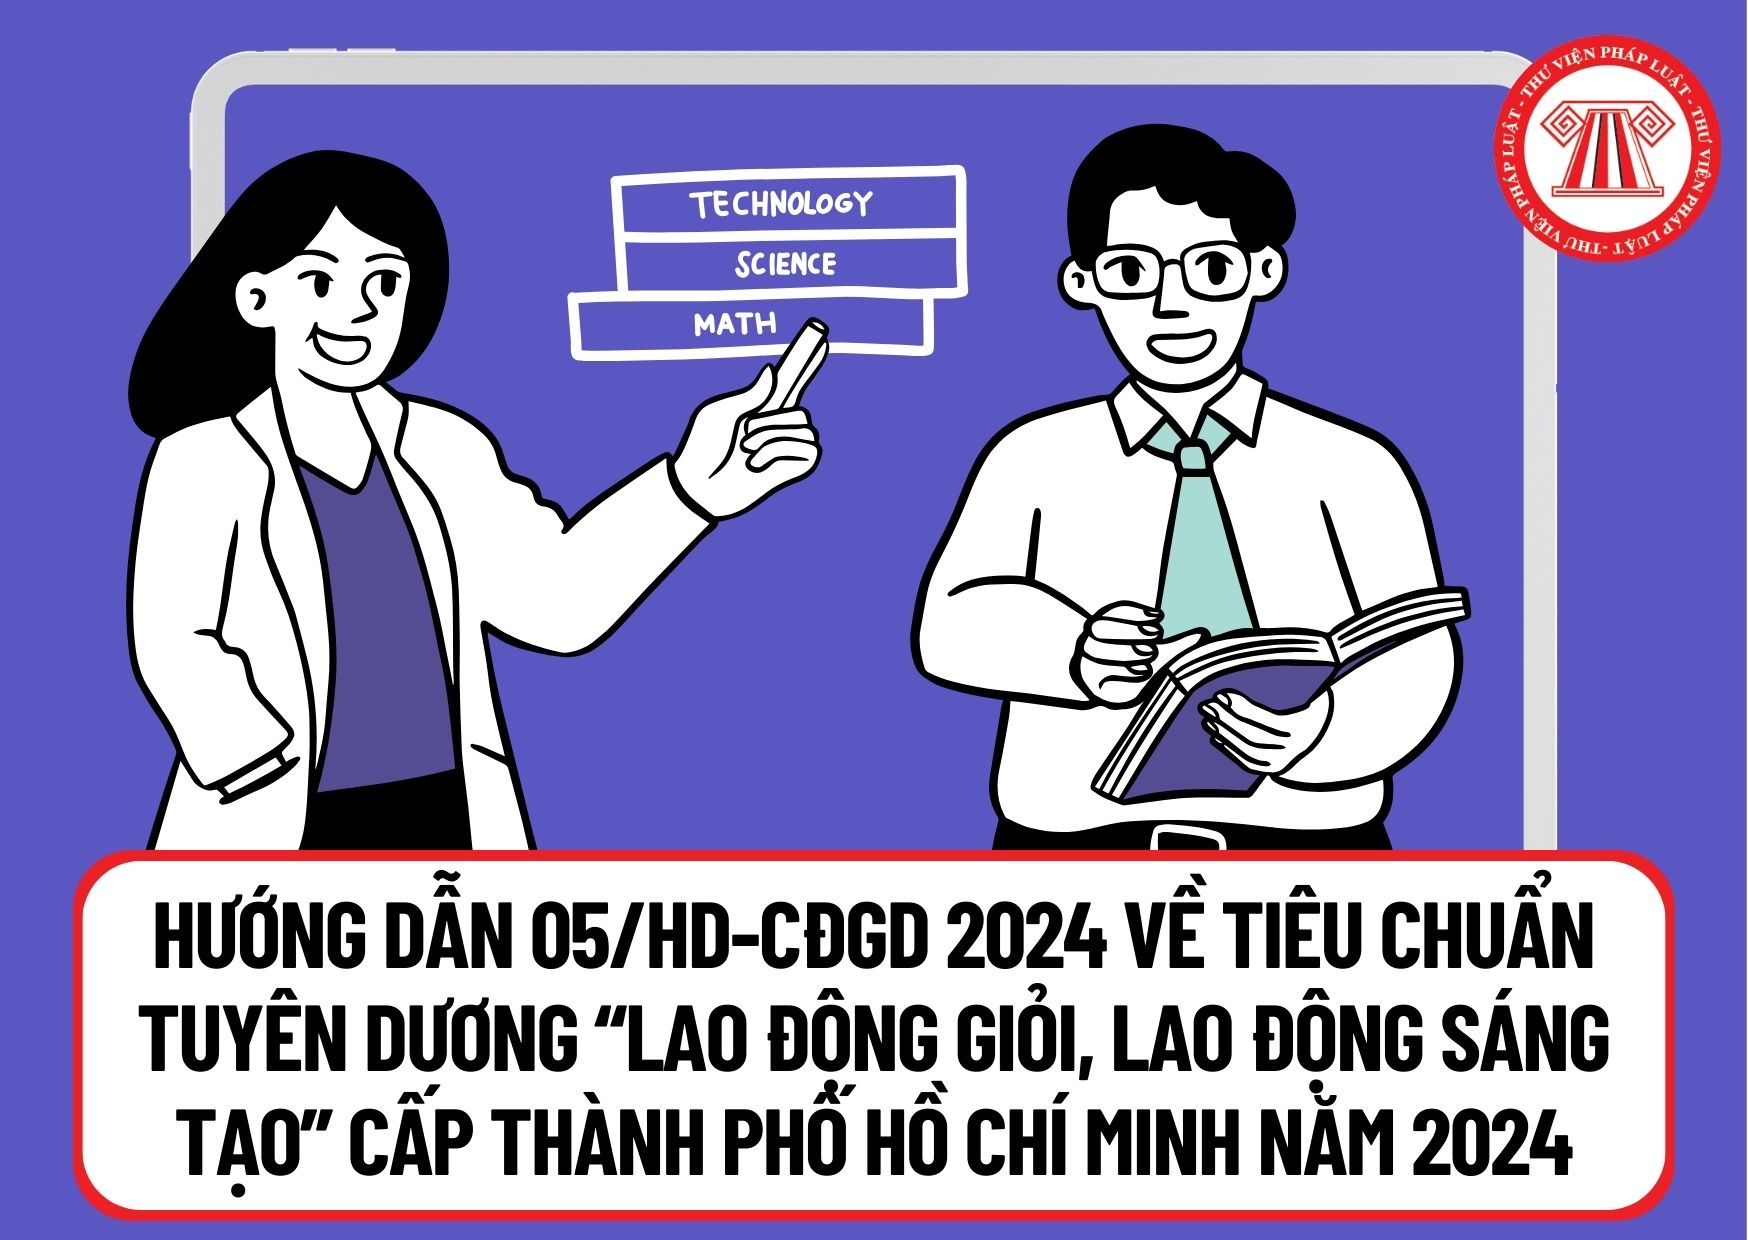 Hướng dẫn 05/HD-CĐGD 2024 về tiêu chuẩn tuyên dương “Lao động giỏi, Lao động sáng tạo” cấp Thành phố Hồ Chí Minh năm 2024 ra sao?